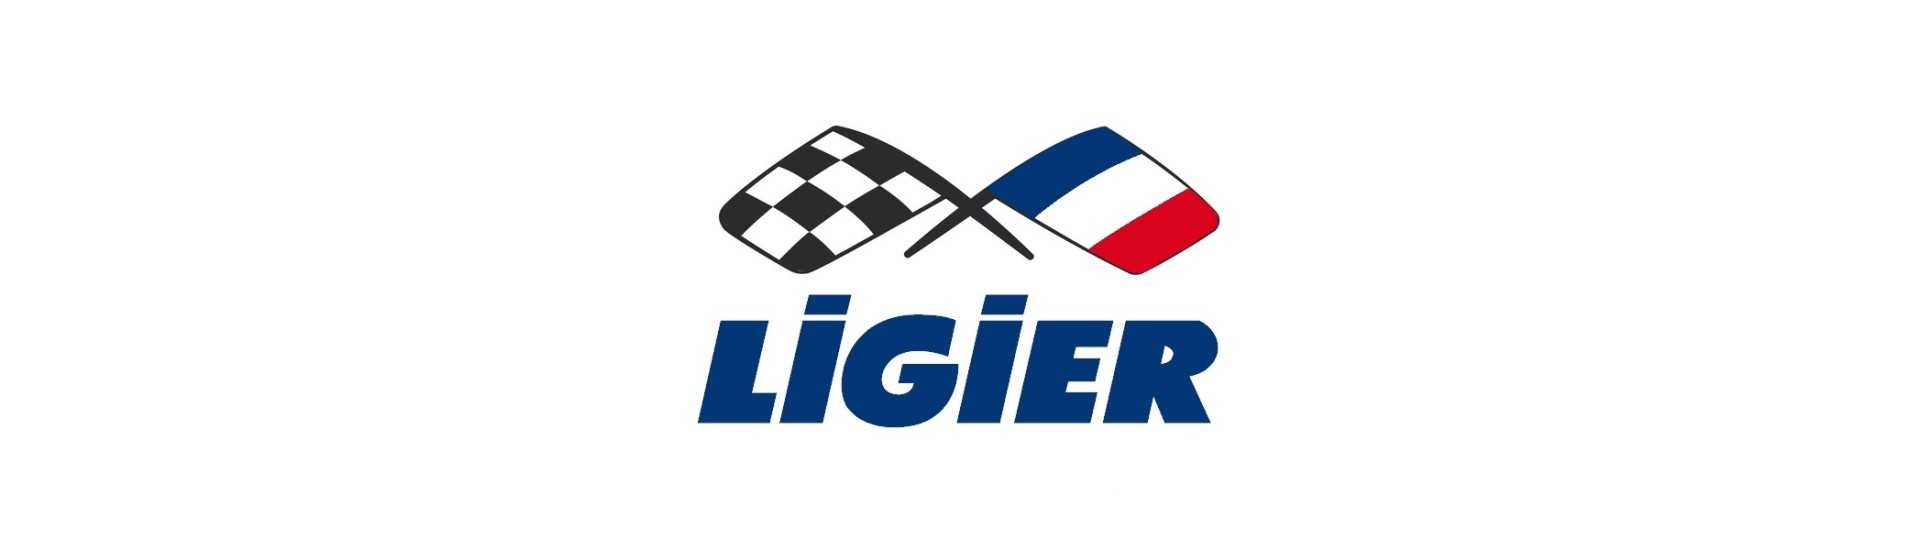 Moyeu + disco freno al miglior prezzo per auto senza patente Ligier